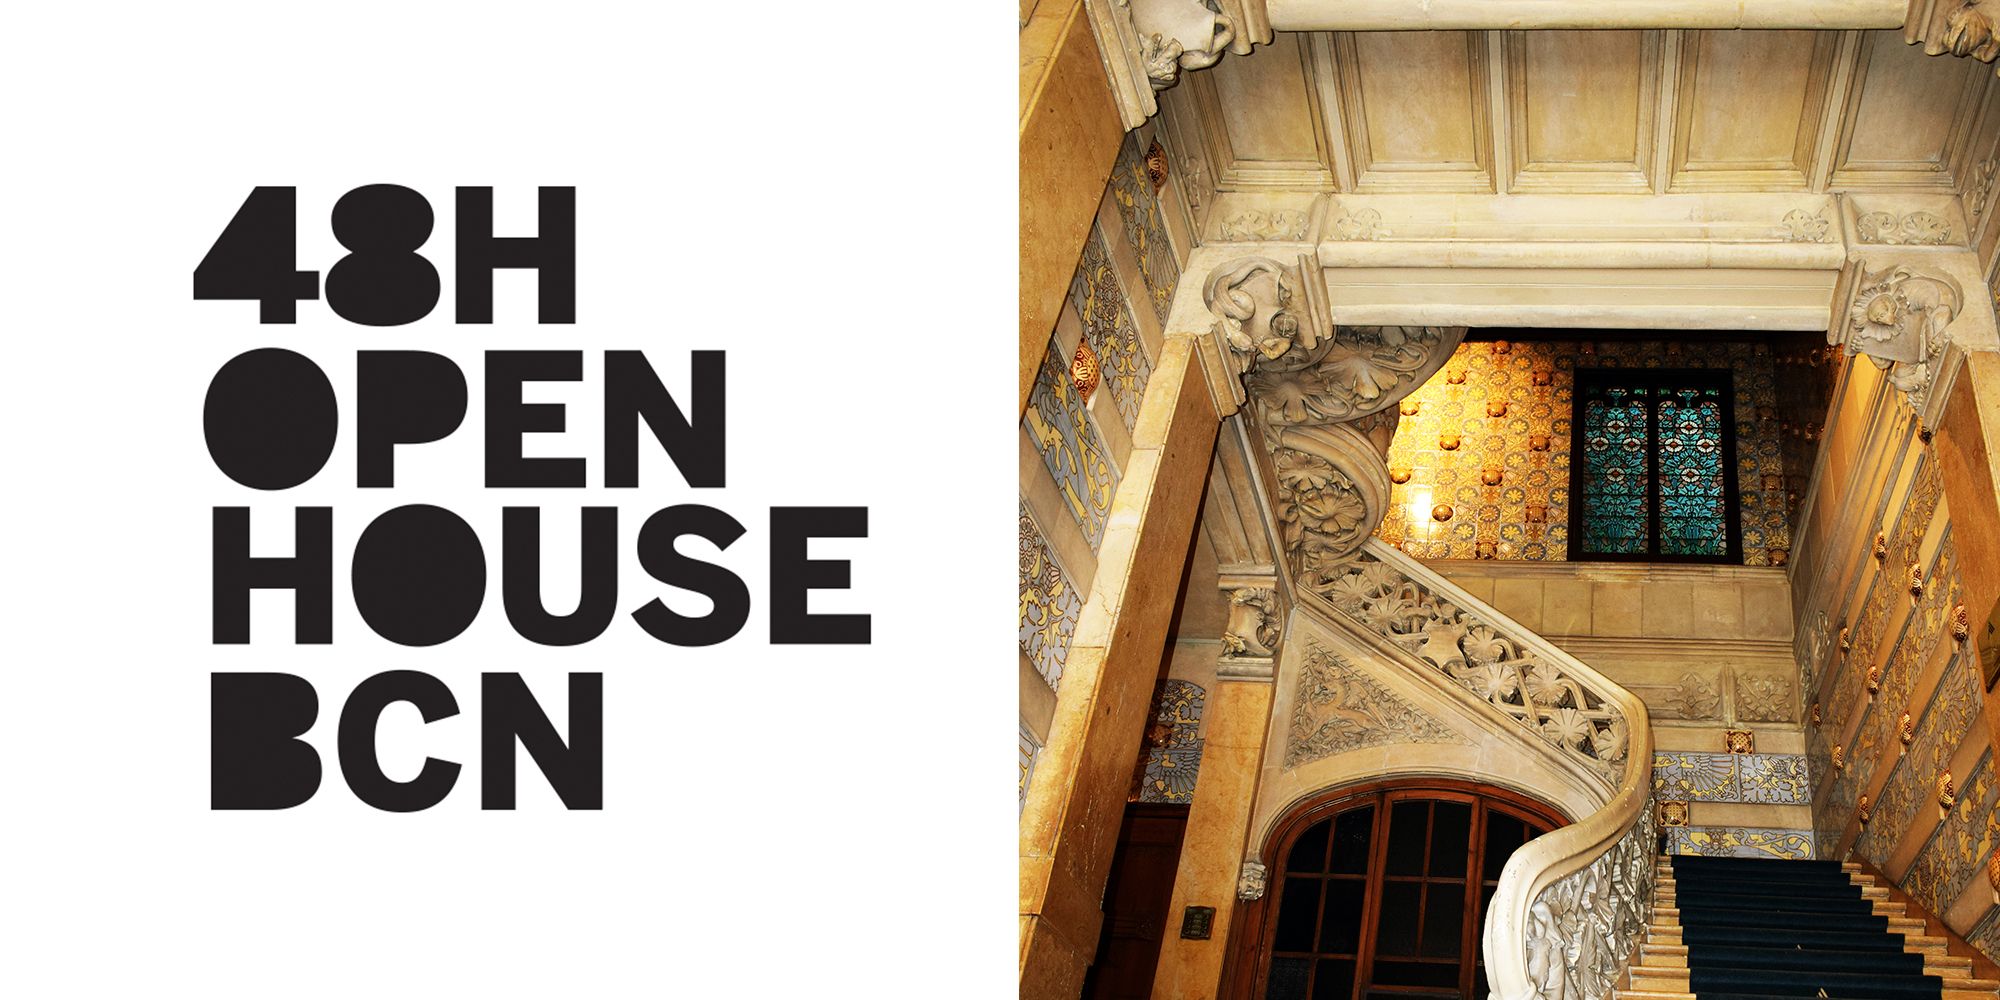 Festival de arquitectura “48H Open House” busca arquitectos voluntarios